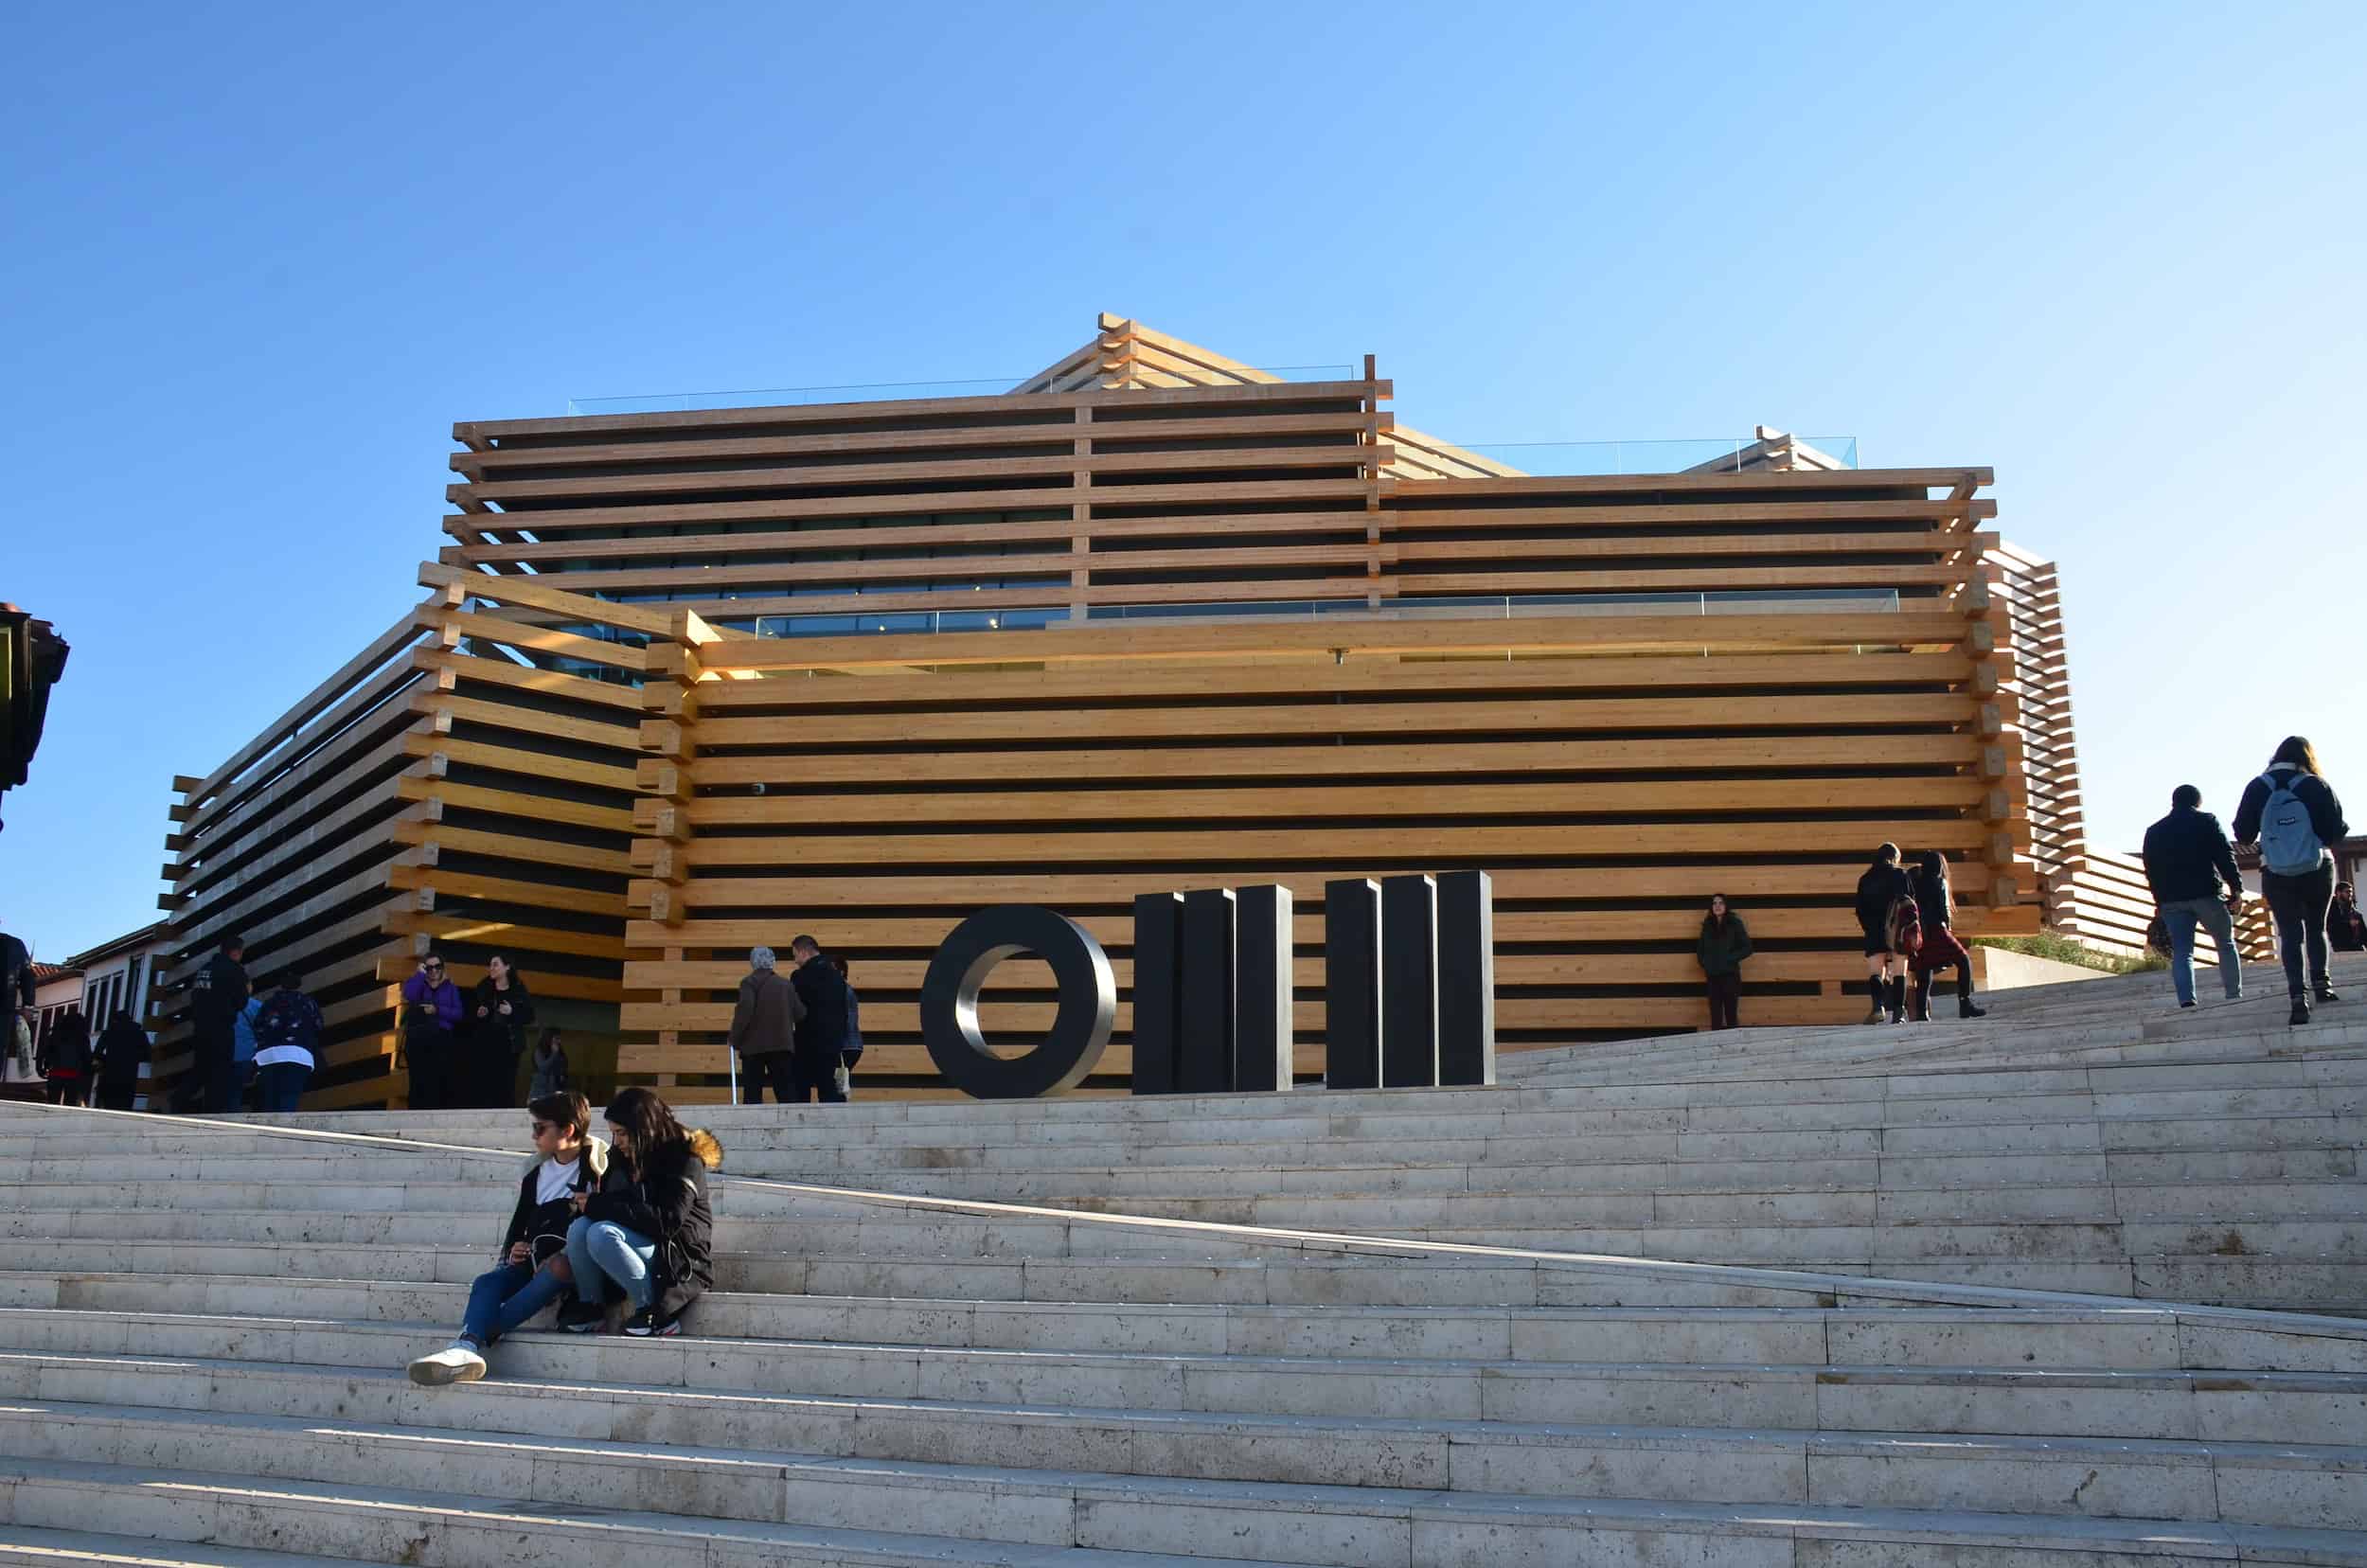 Odunpazarı Modern Museum in Eskişehir, Turkey